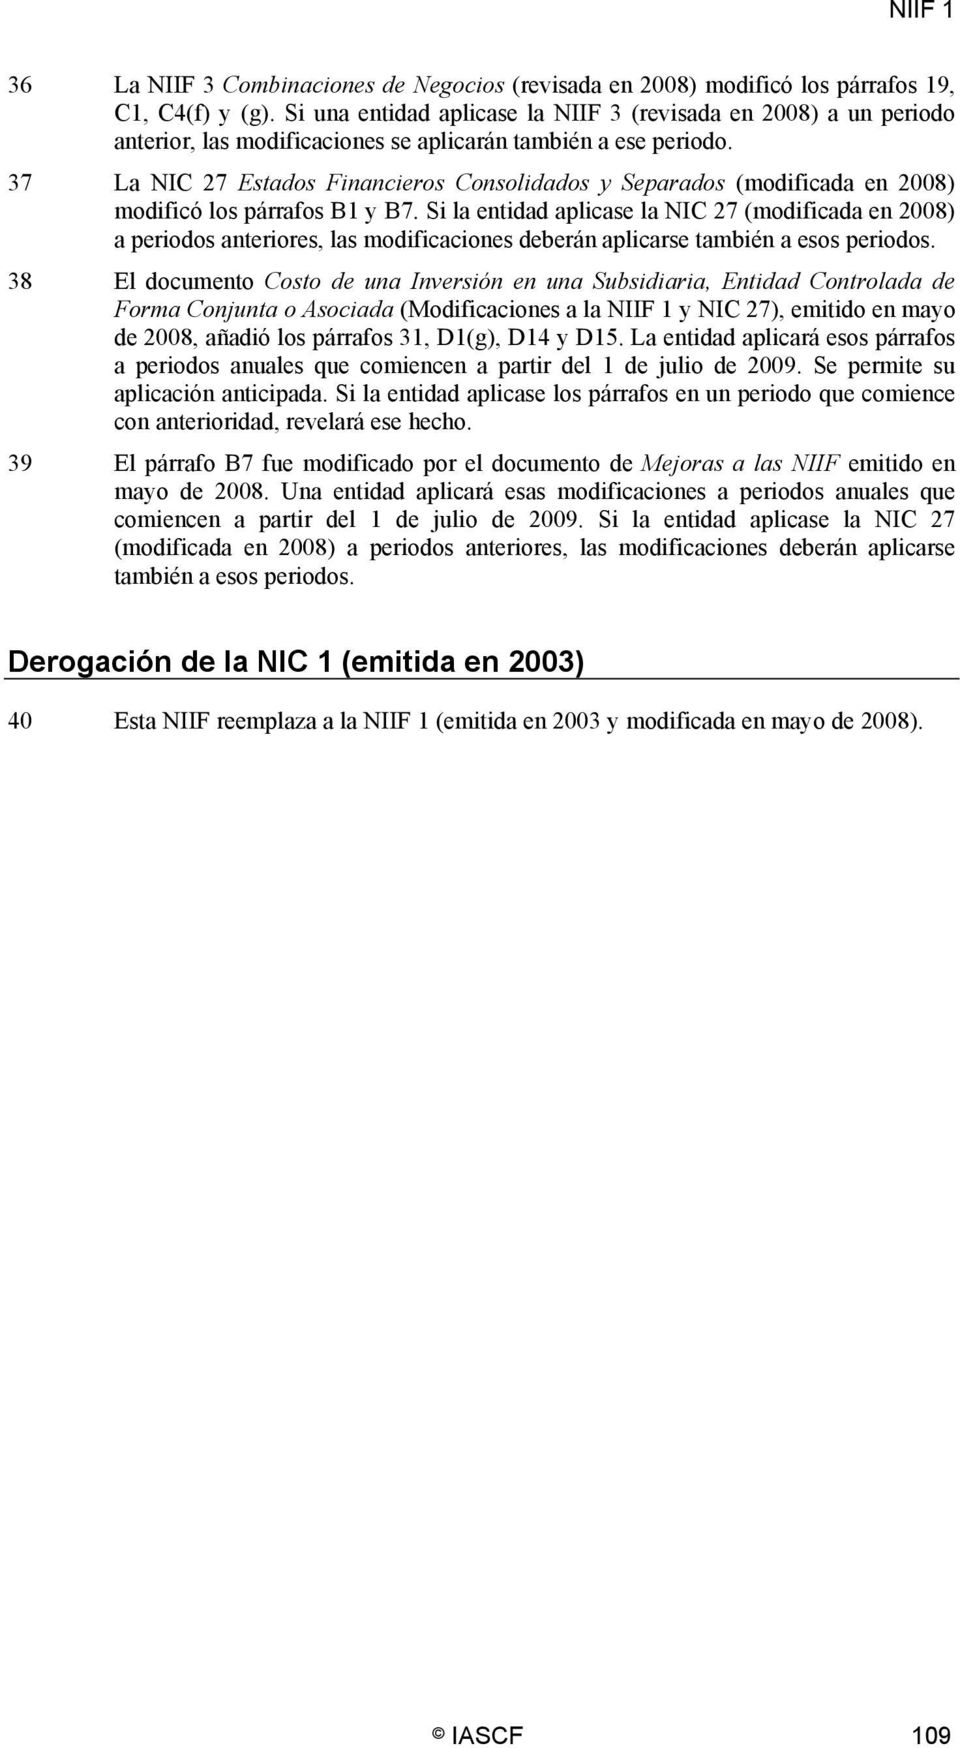 37 La NIC 27 Estados Financieros Consolidados y Separados (modificada en 2008) modificó los párrafos B1 y B7.